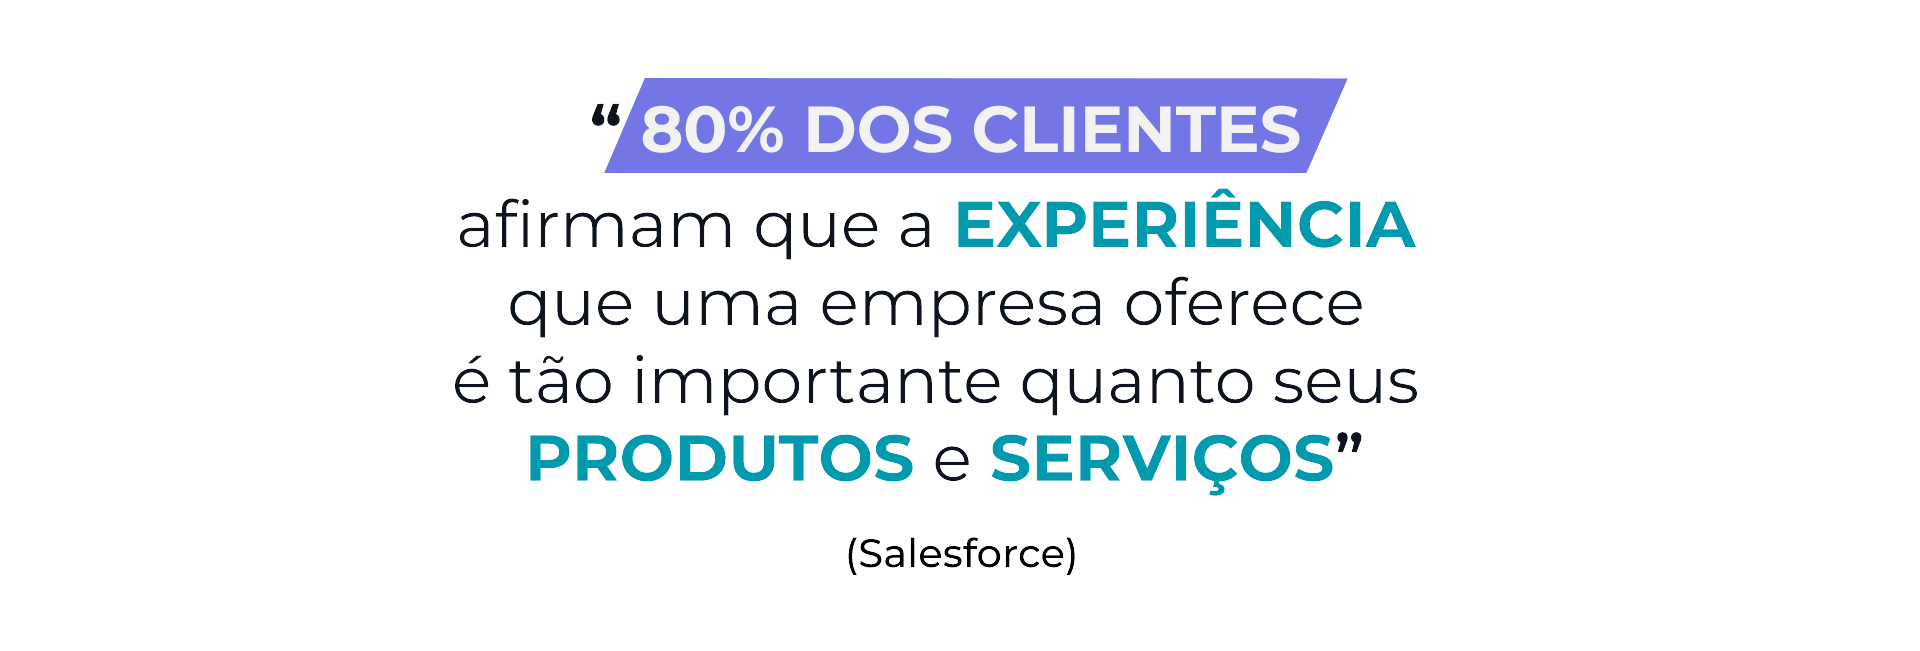 “80% dos clientes afirmam que a experiência que uma empresa oferece é tão importante quanto seus produtos e serviços” - Salesforce